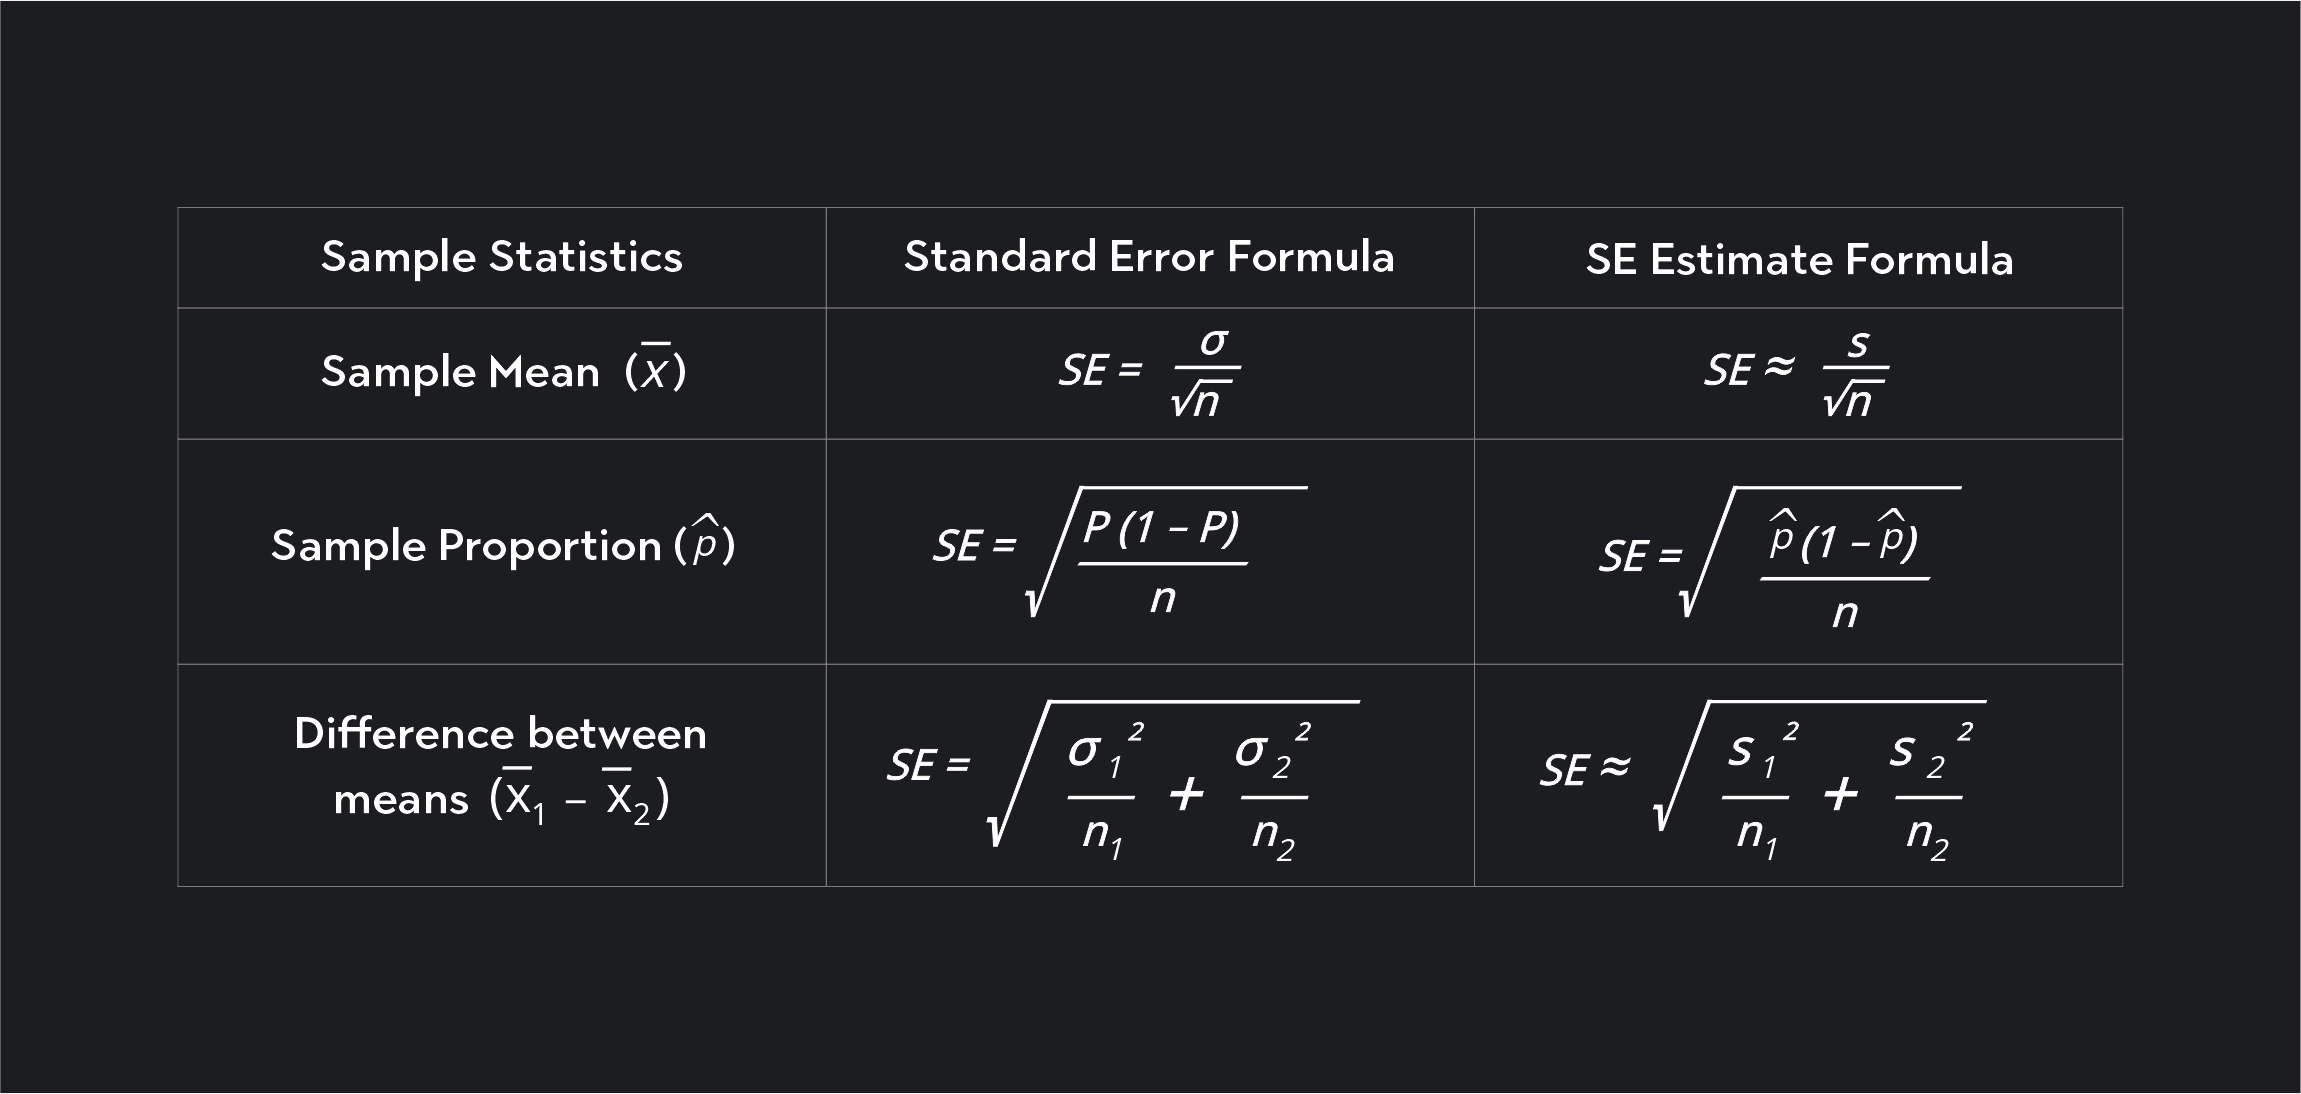 graph showing sample statistics, standard error formula, and SE estimate formula